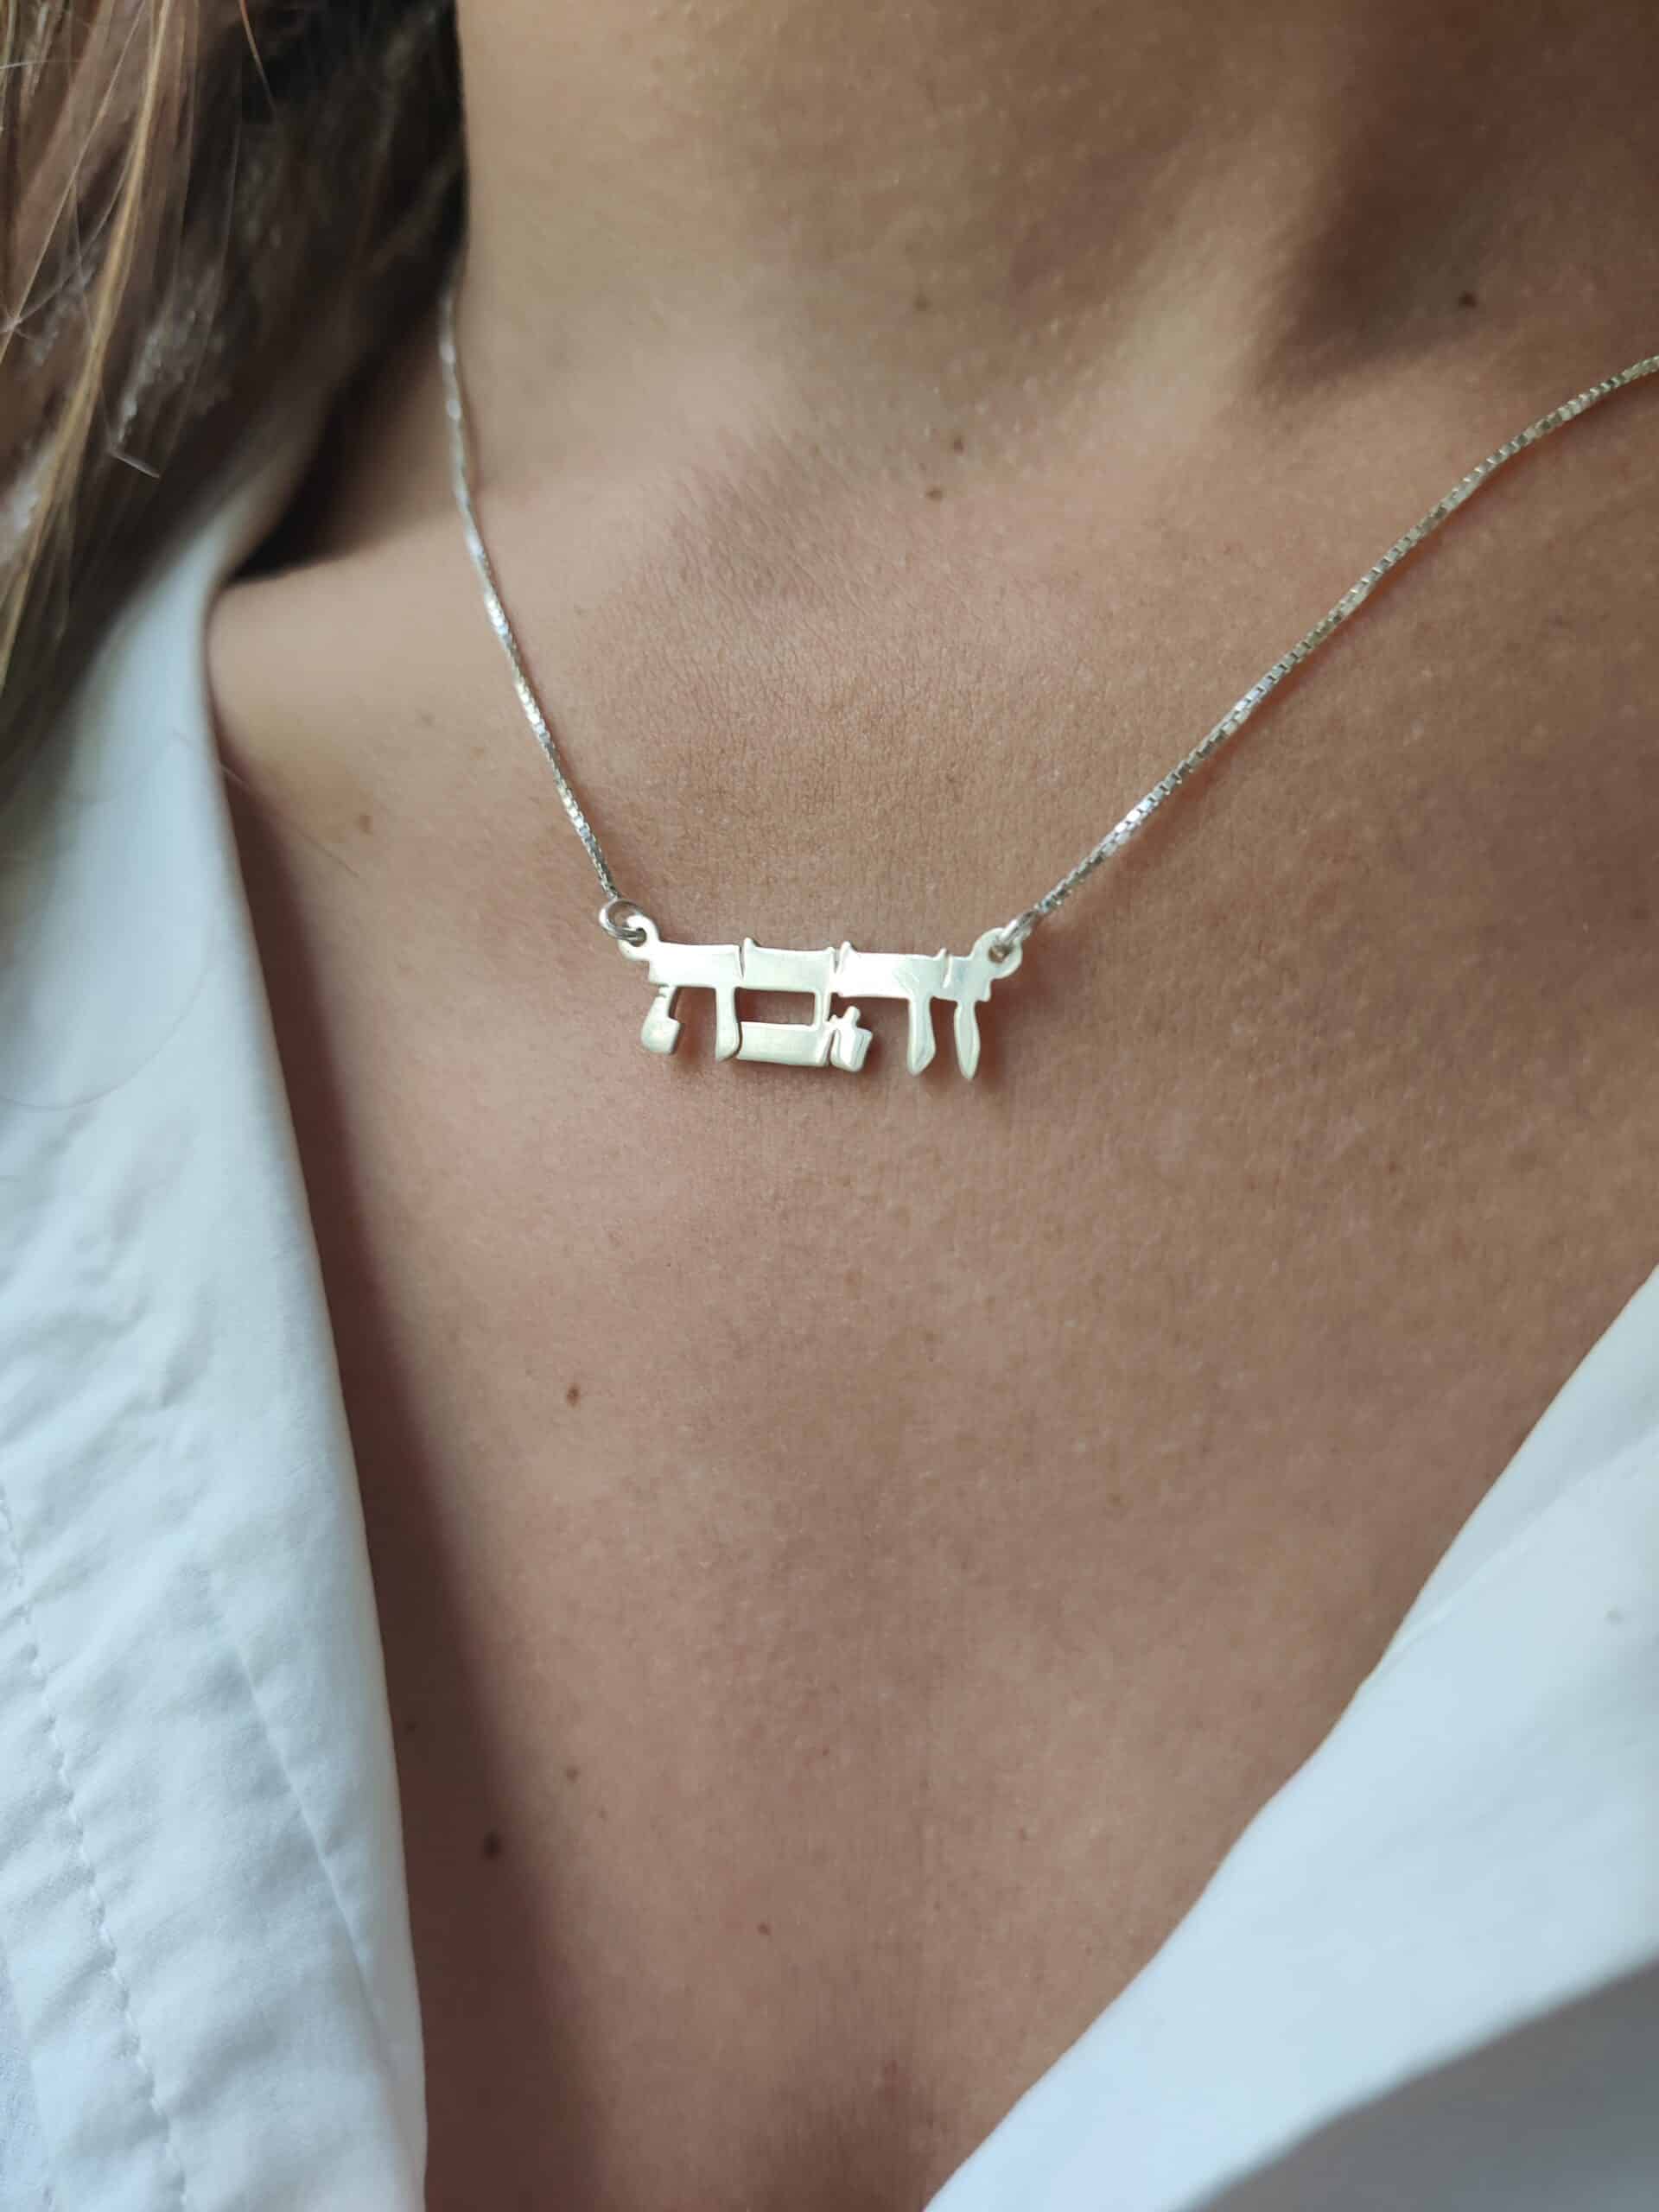 Hebrew Unique Gold Name Necklace